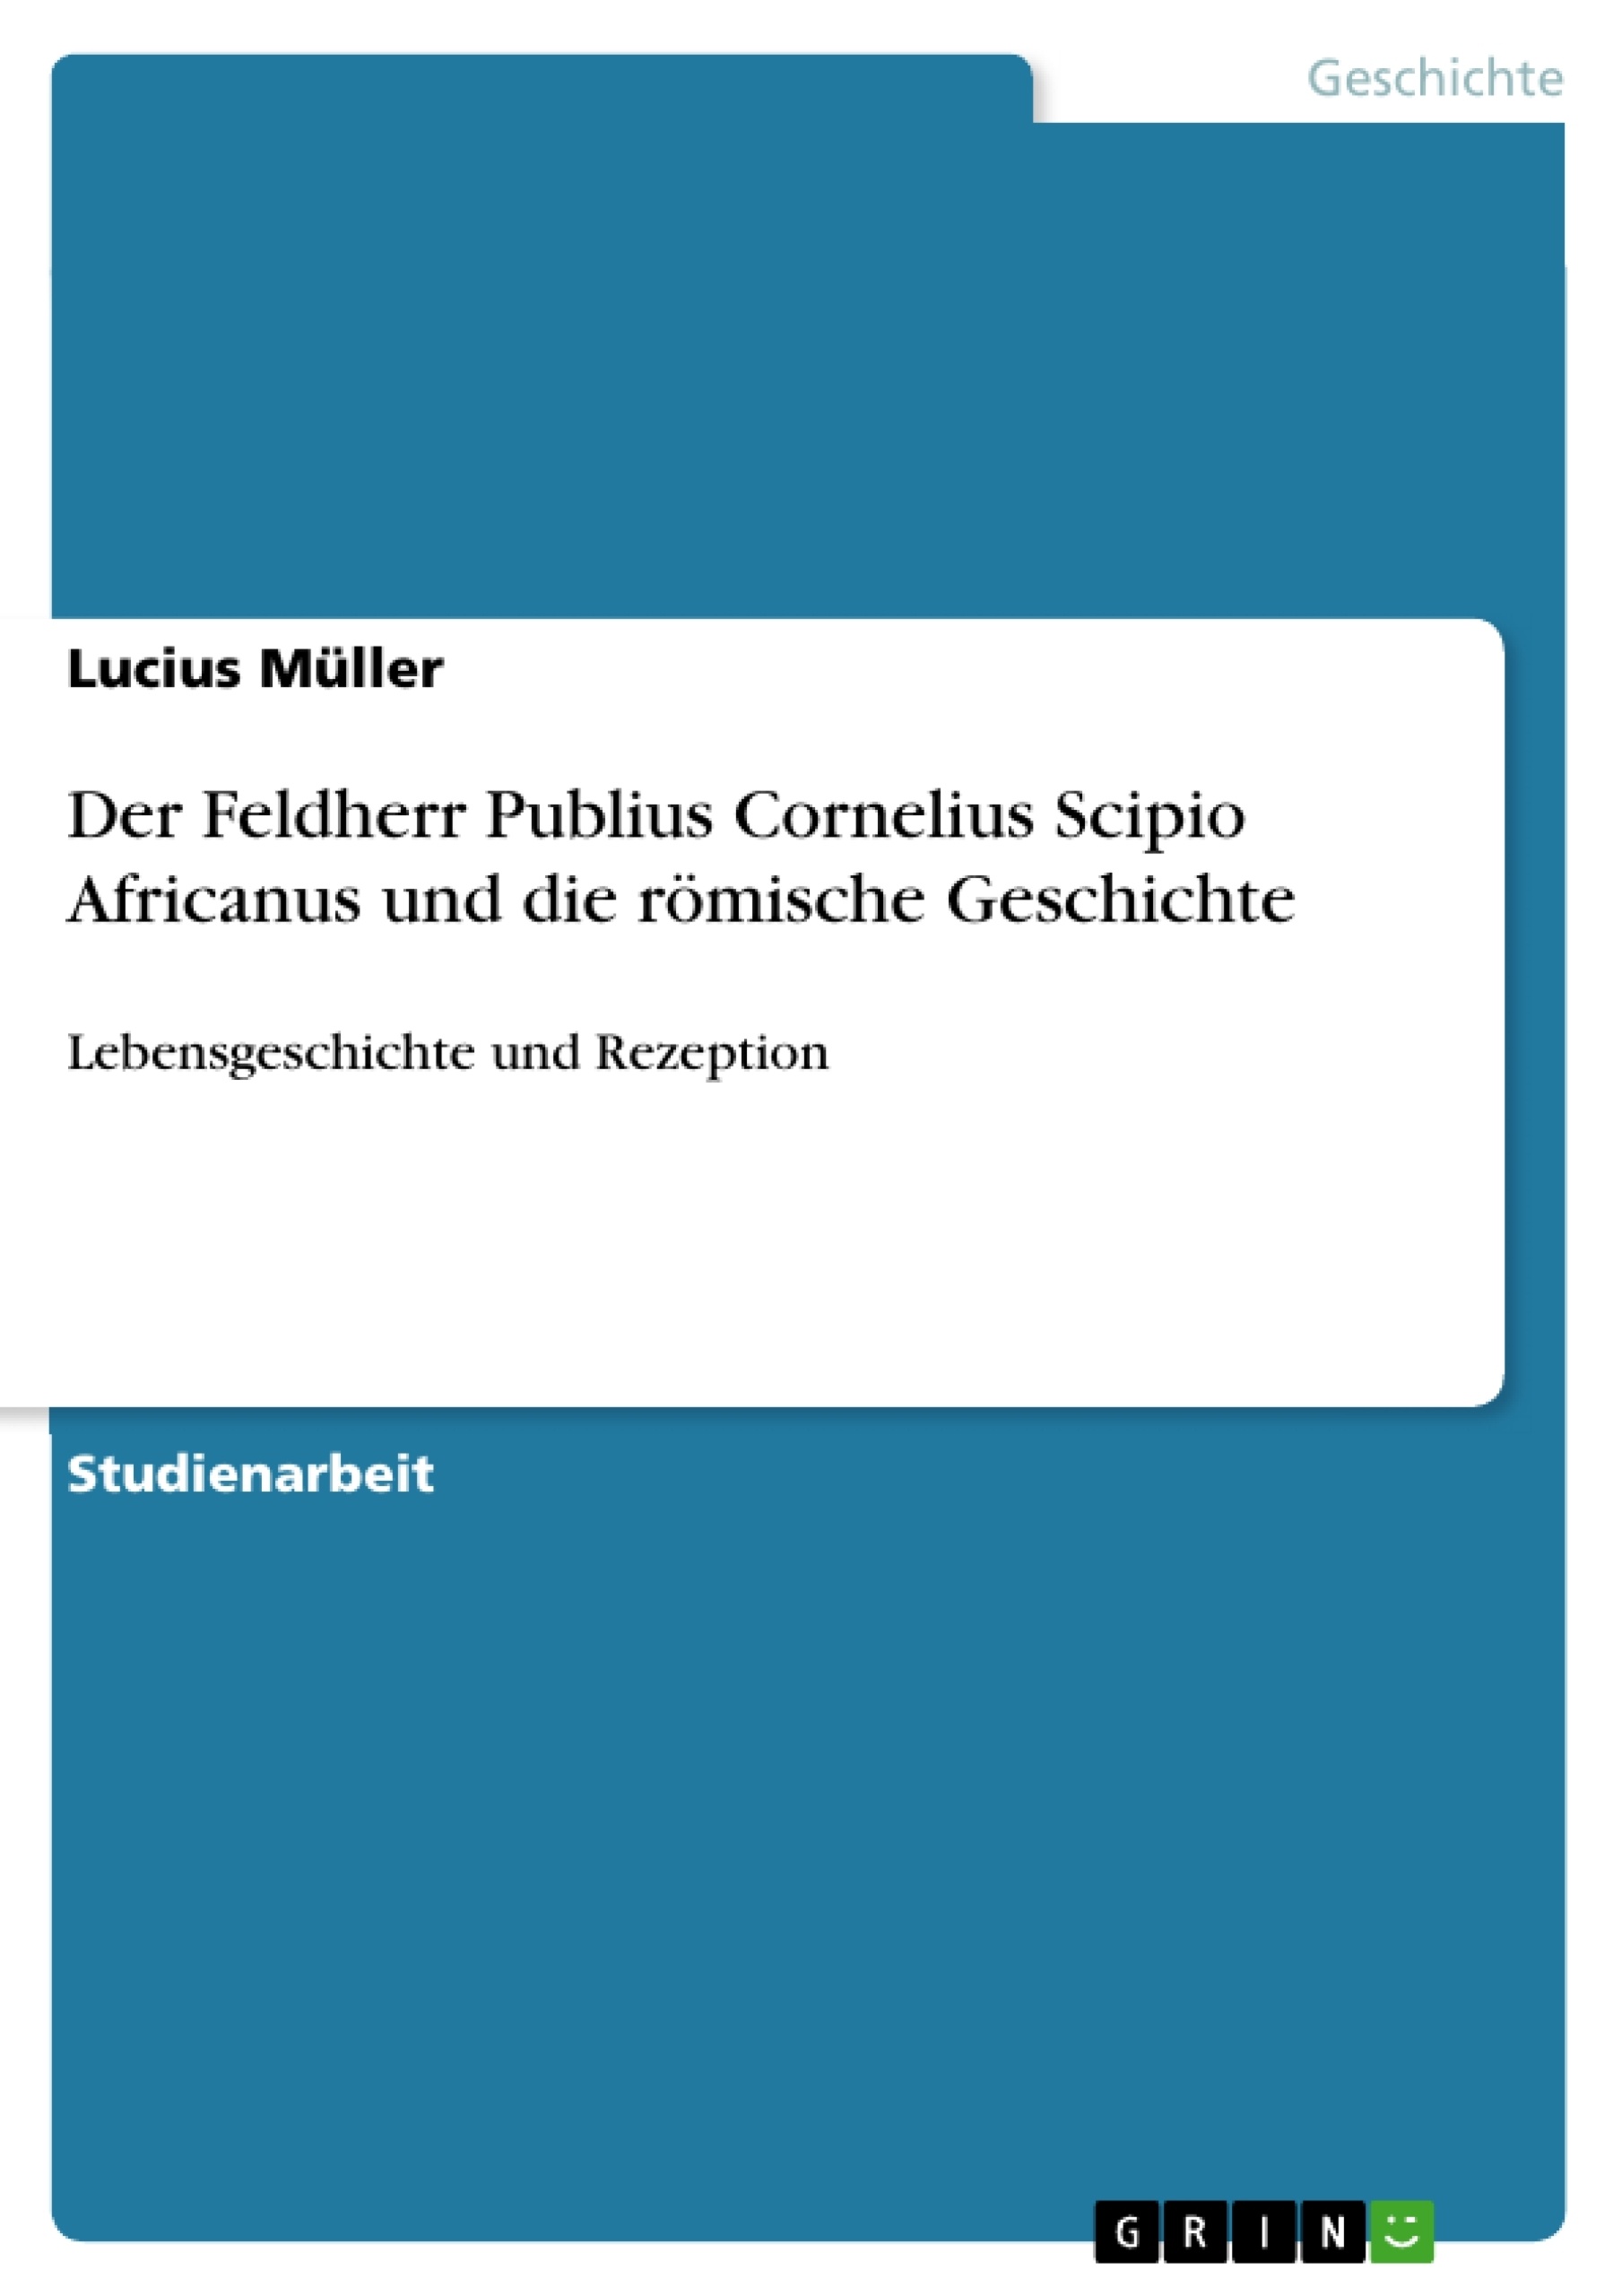 Title: Der Feldherr Publius Cornelius Scipio Africanus und die römische Geschichte